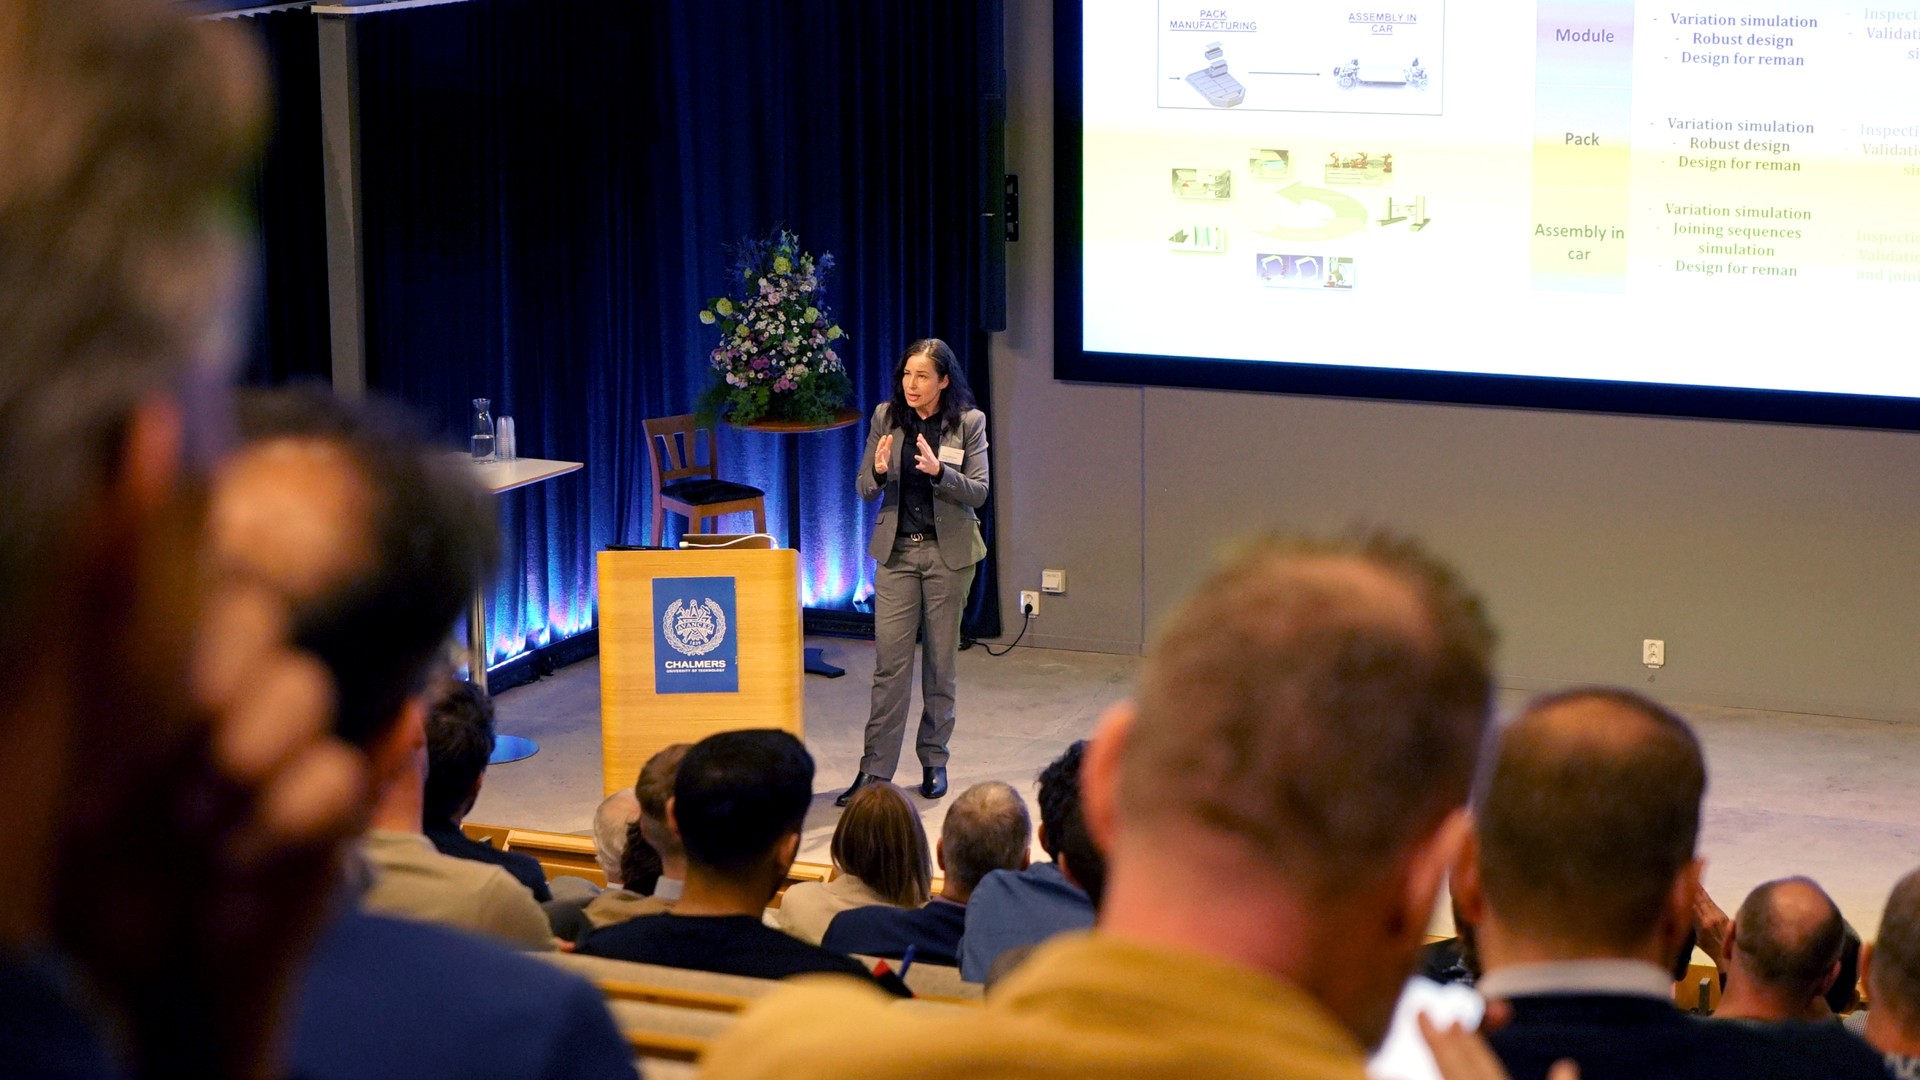 Kristina Wärmefjord presenting at the seminar.